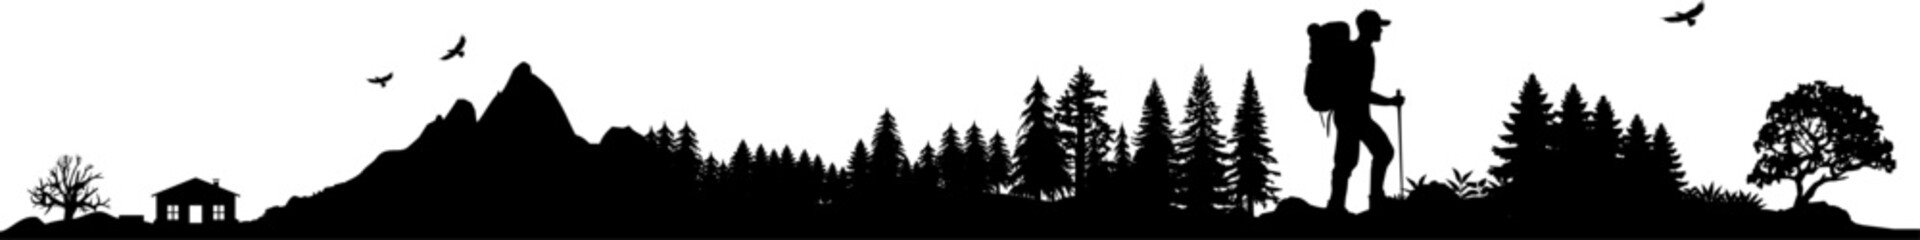 Obraz premium Vektor Silhouette Berge Wanderer in der Natur - Abenteuer Wandern in den Wäldern und Gebirgen - Wildnis Camping